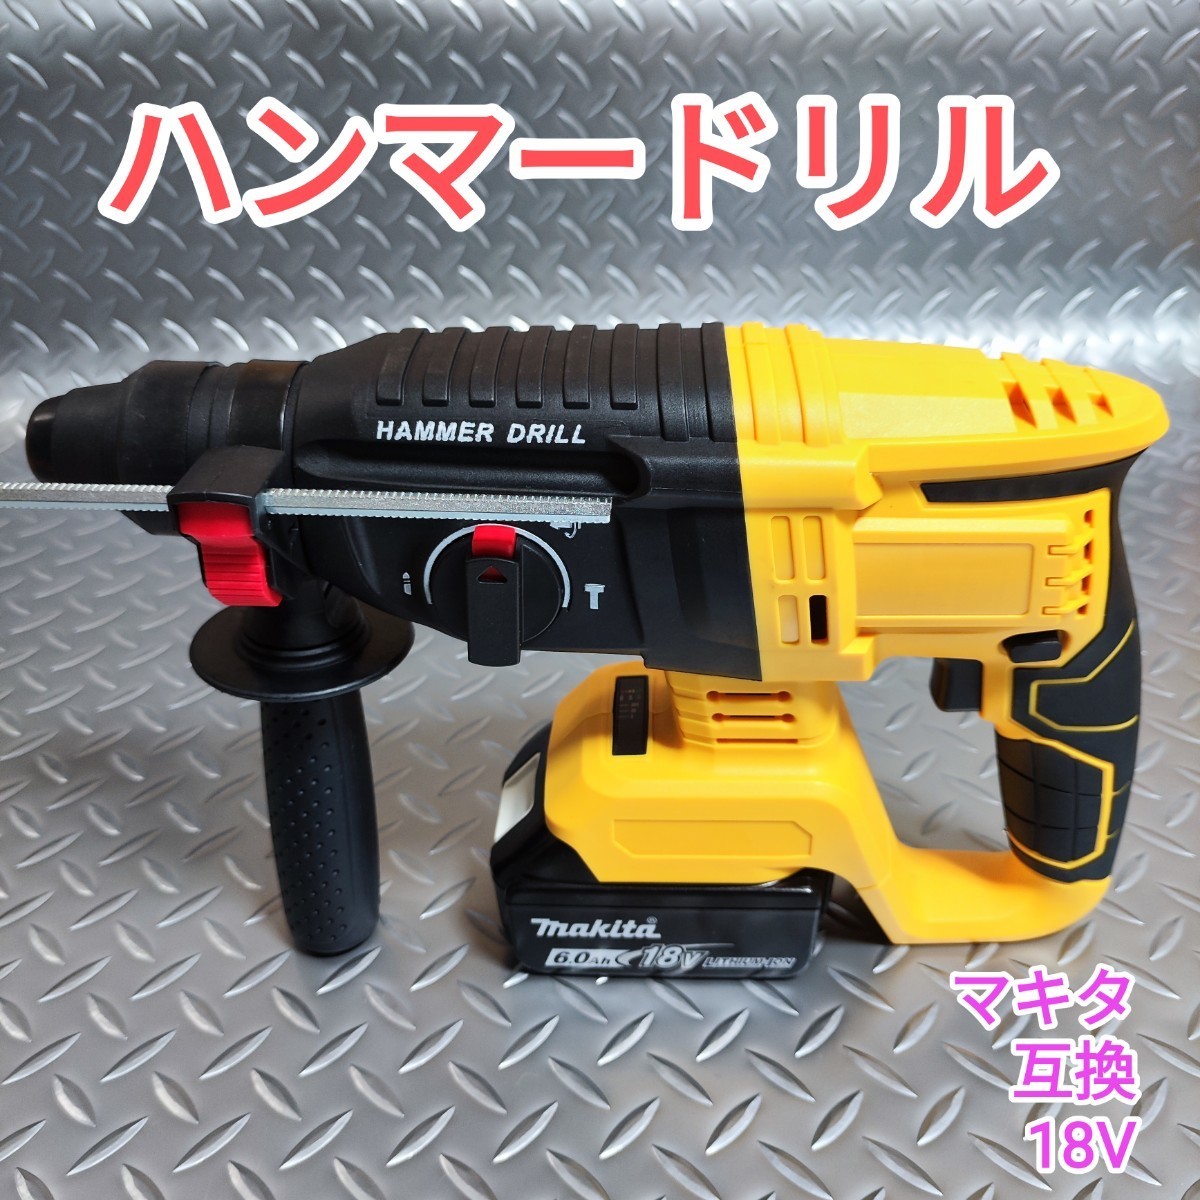 【黄色】ハンマードリル マキタ 互換品 18V はつり 電動ハンマー